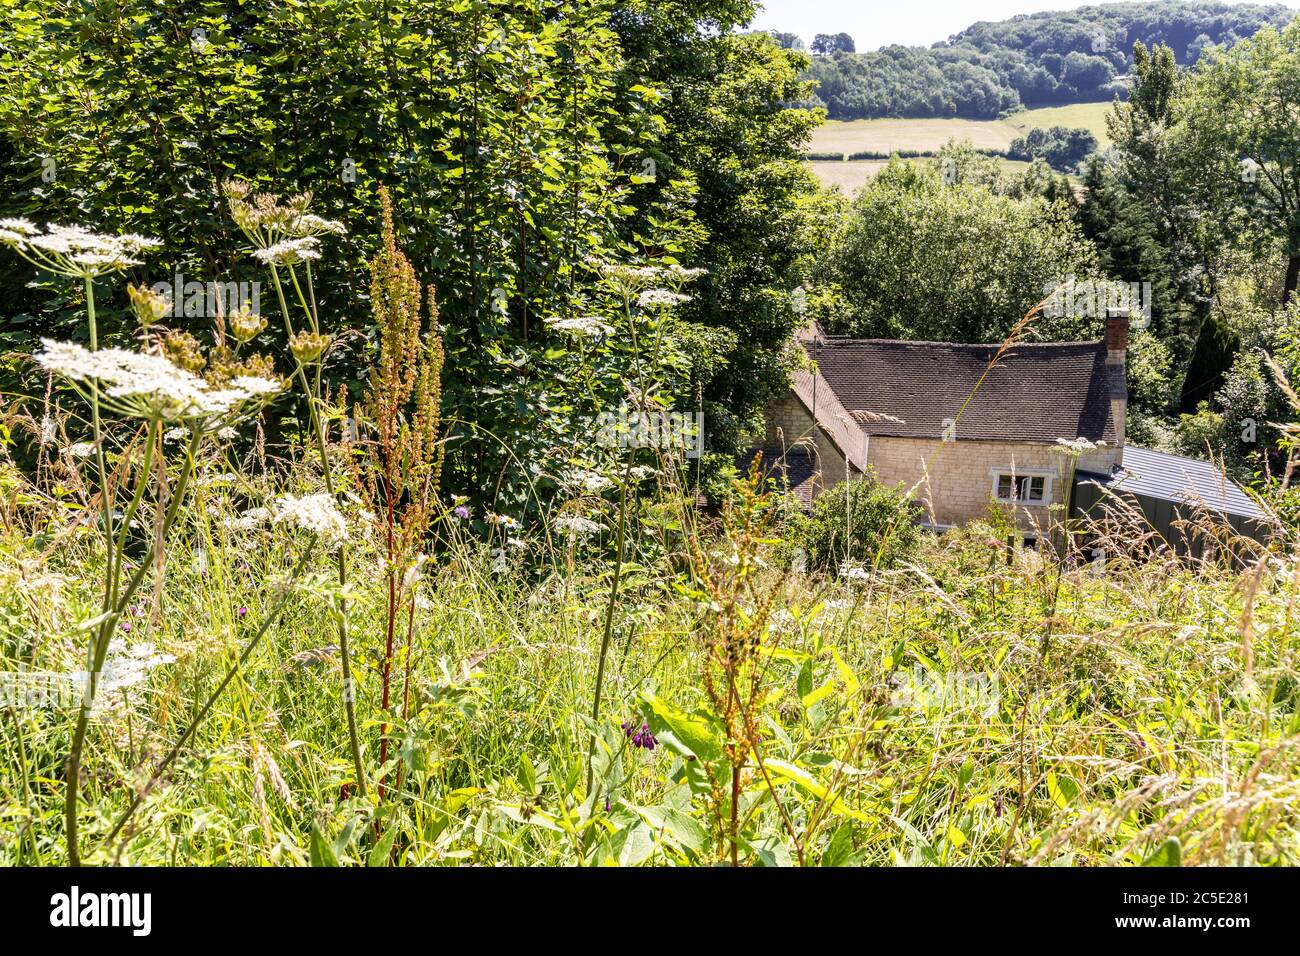 'Rosebank' (con una extensión moderna) en el pueblo de Slad, Gloucestershire, Reino Unido - la casa de la infancia de Laurie Lee, autor de 'Cider with Ros Foto de stock